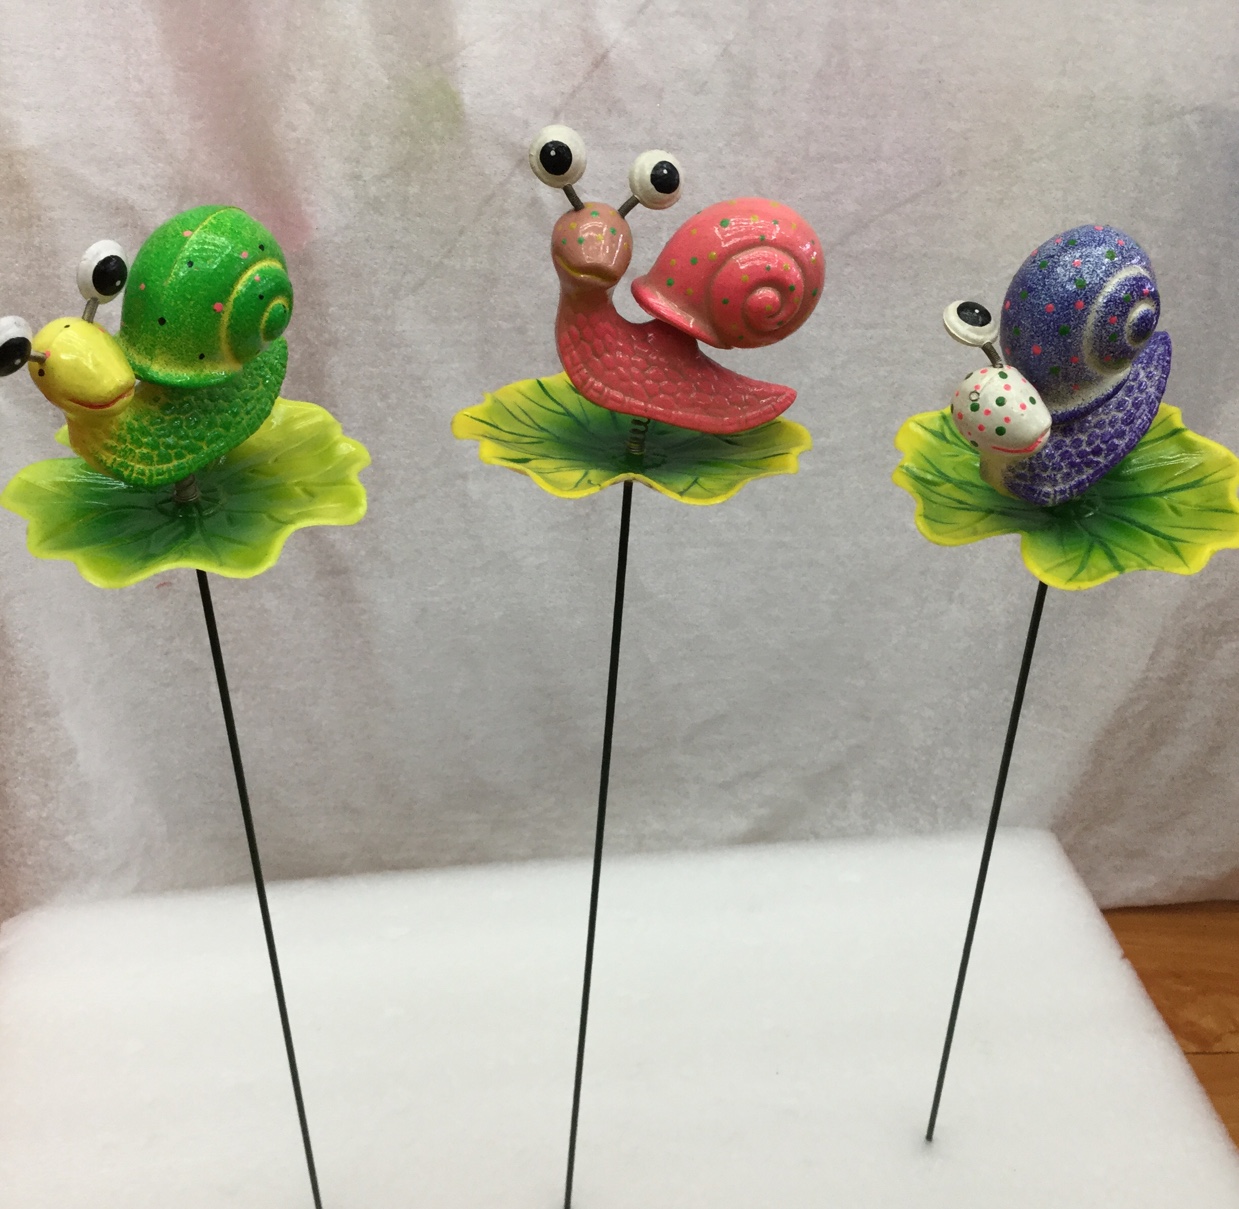 荷叶蜗牛家居装饰工艺品3D立体彩色塑料创意家居1